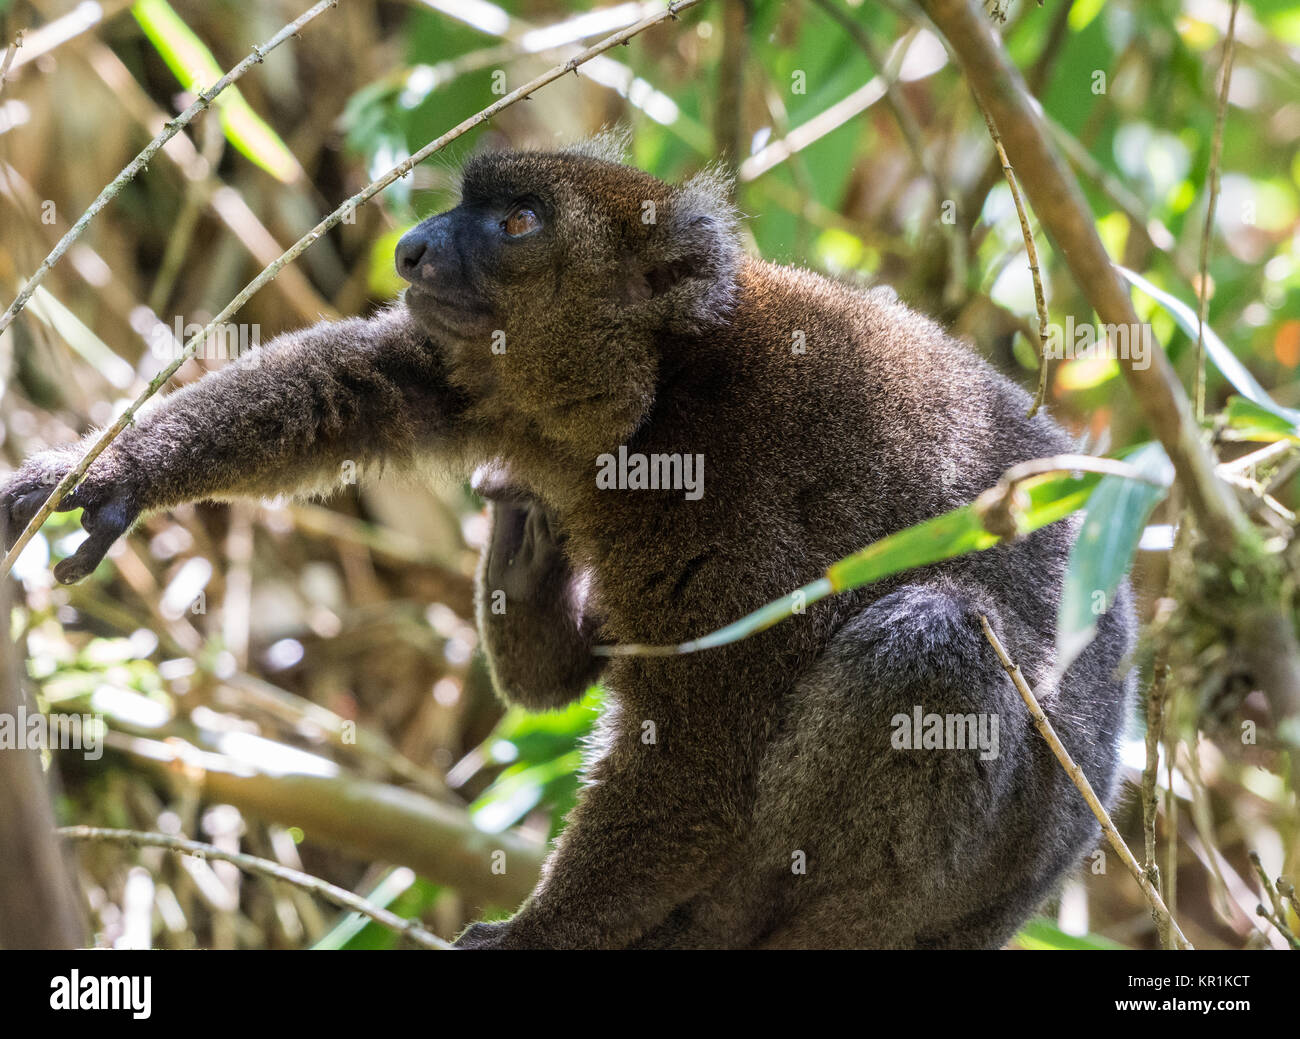 Eine vom Aussterben bedroht Mehr Bambus Lemur (Prolemur Simus)  Nahrungssuche im Bambuswald. Ranomafana Nationalpark. Madagaskar, Afrika  Stockfotografie - Alamy